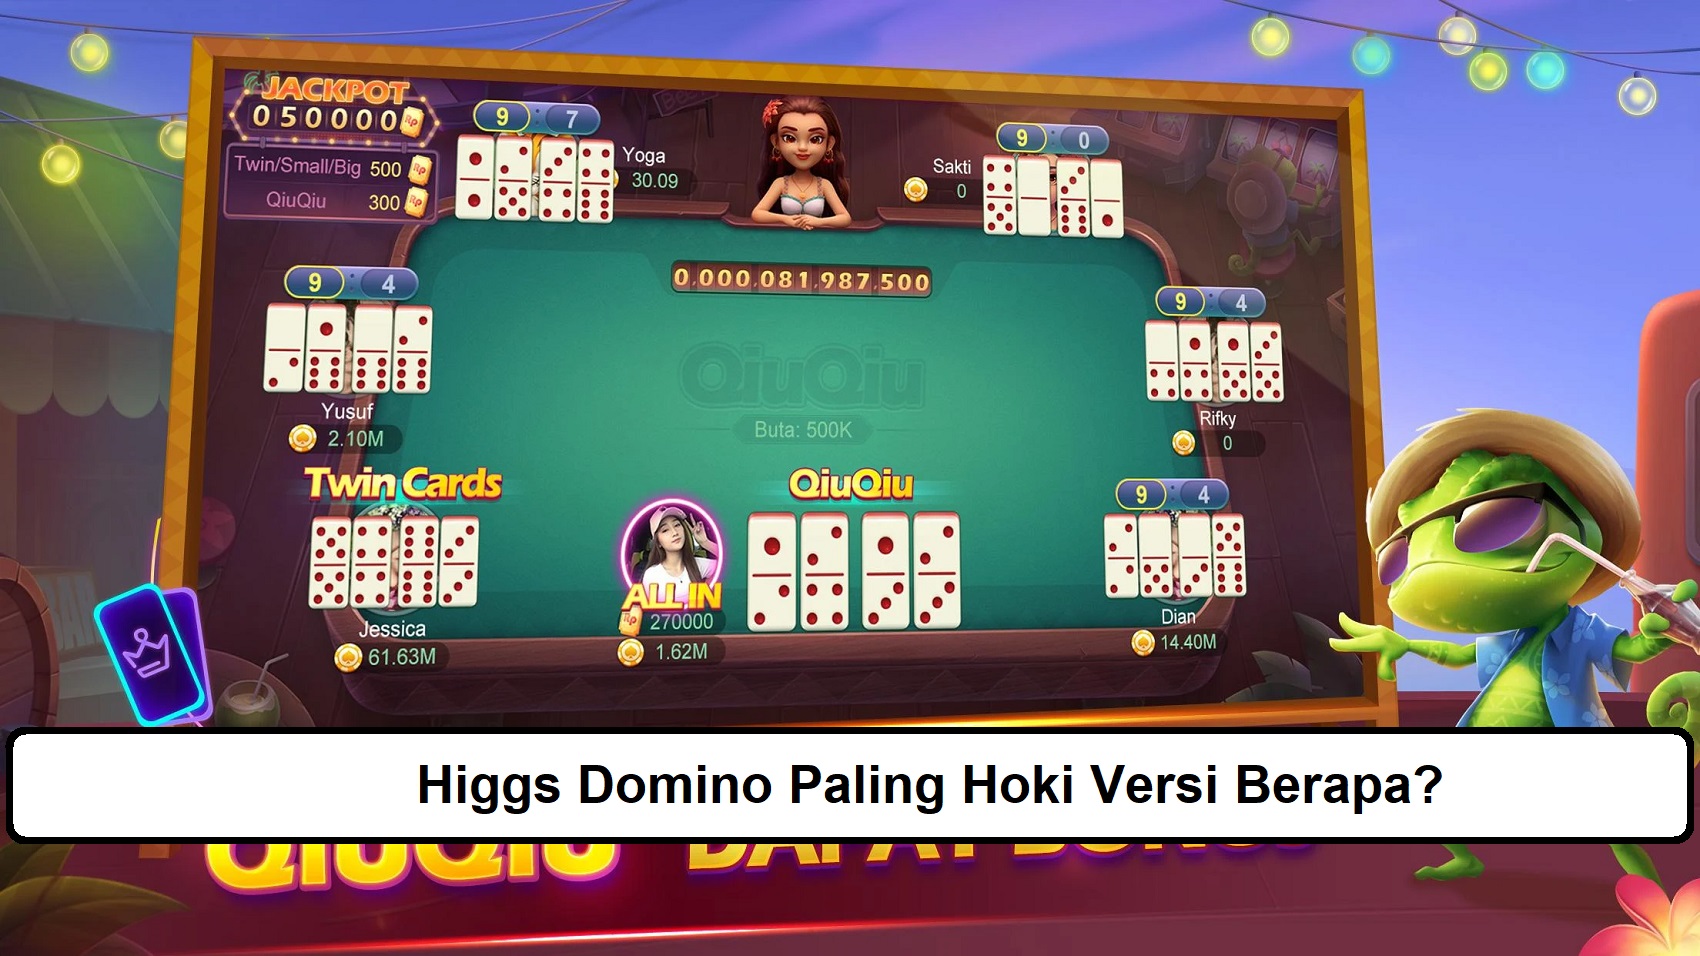 Higgs Domino Paling Hoki Versi Berapa?